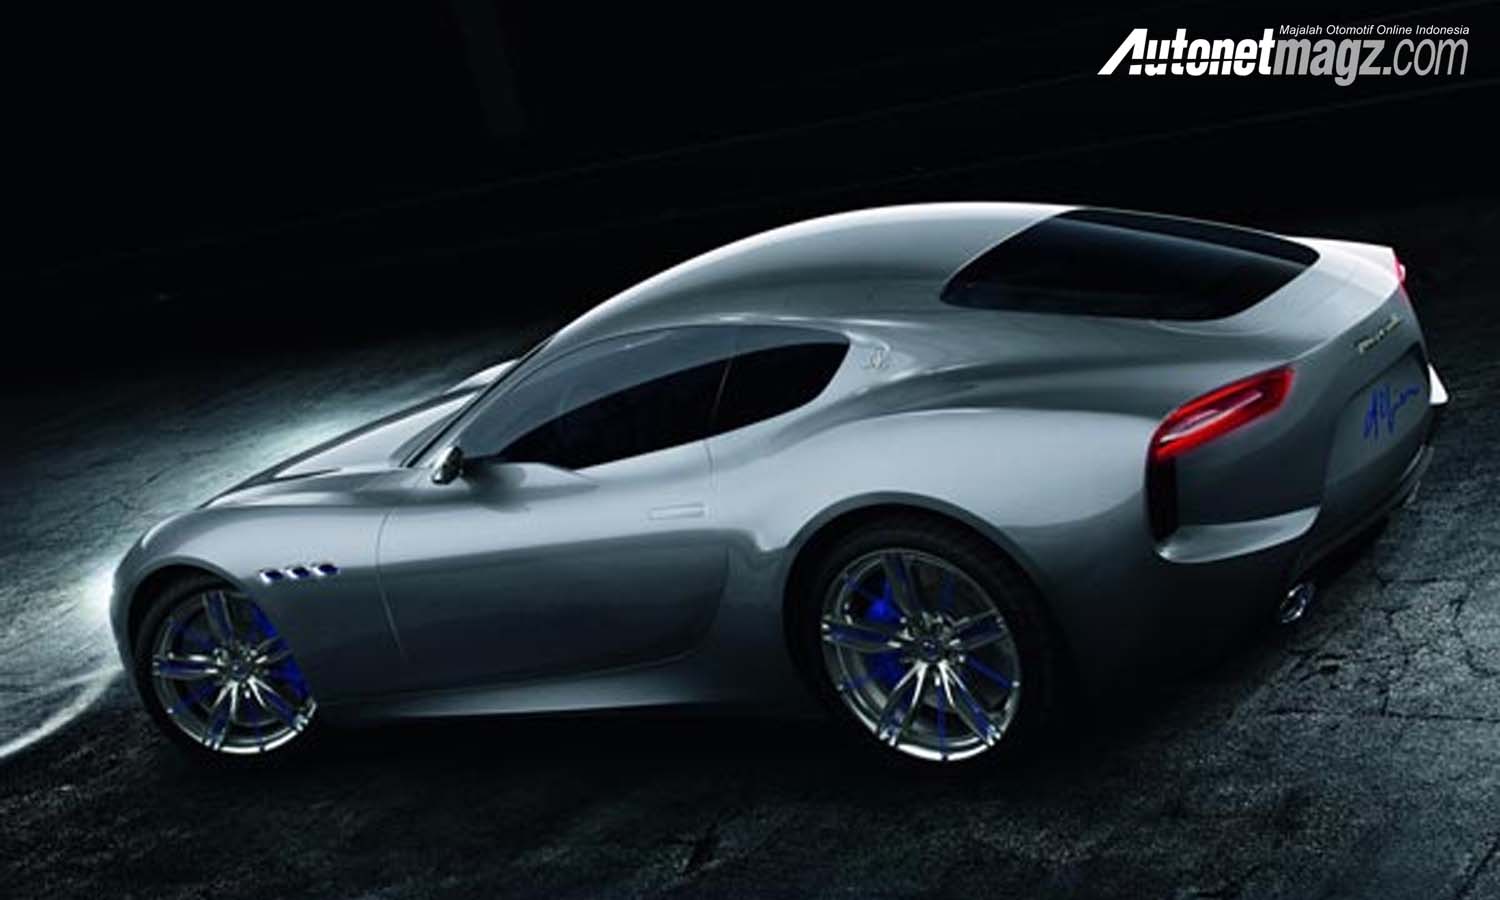 Berita, Maserati Alfieri belakang: Mobil Sport Listrik Maserati Sedang Dikembangkan, Rilis 2020